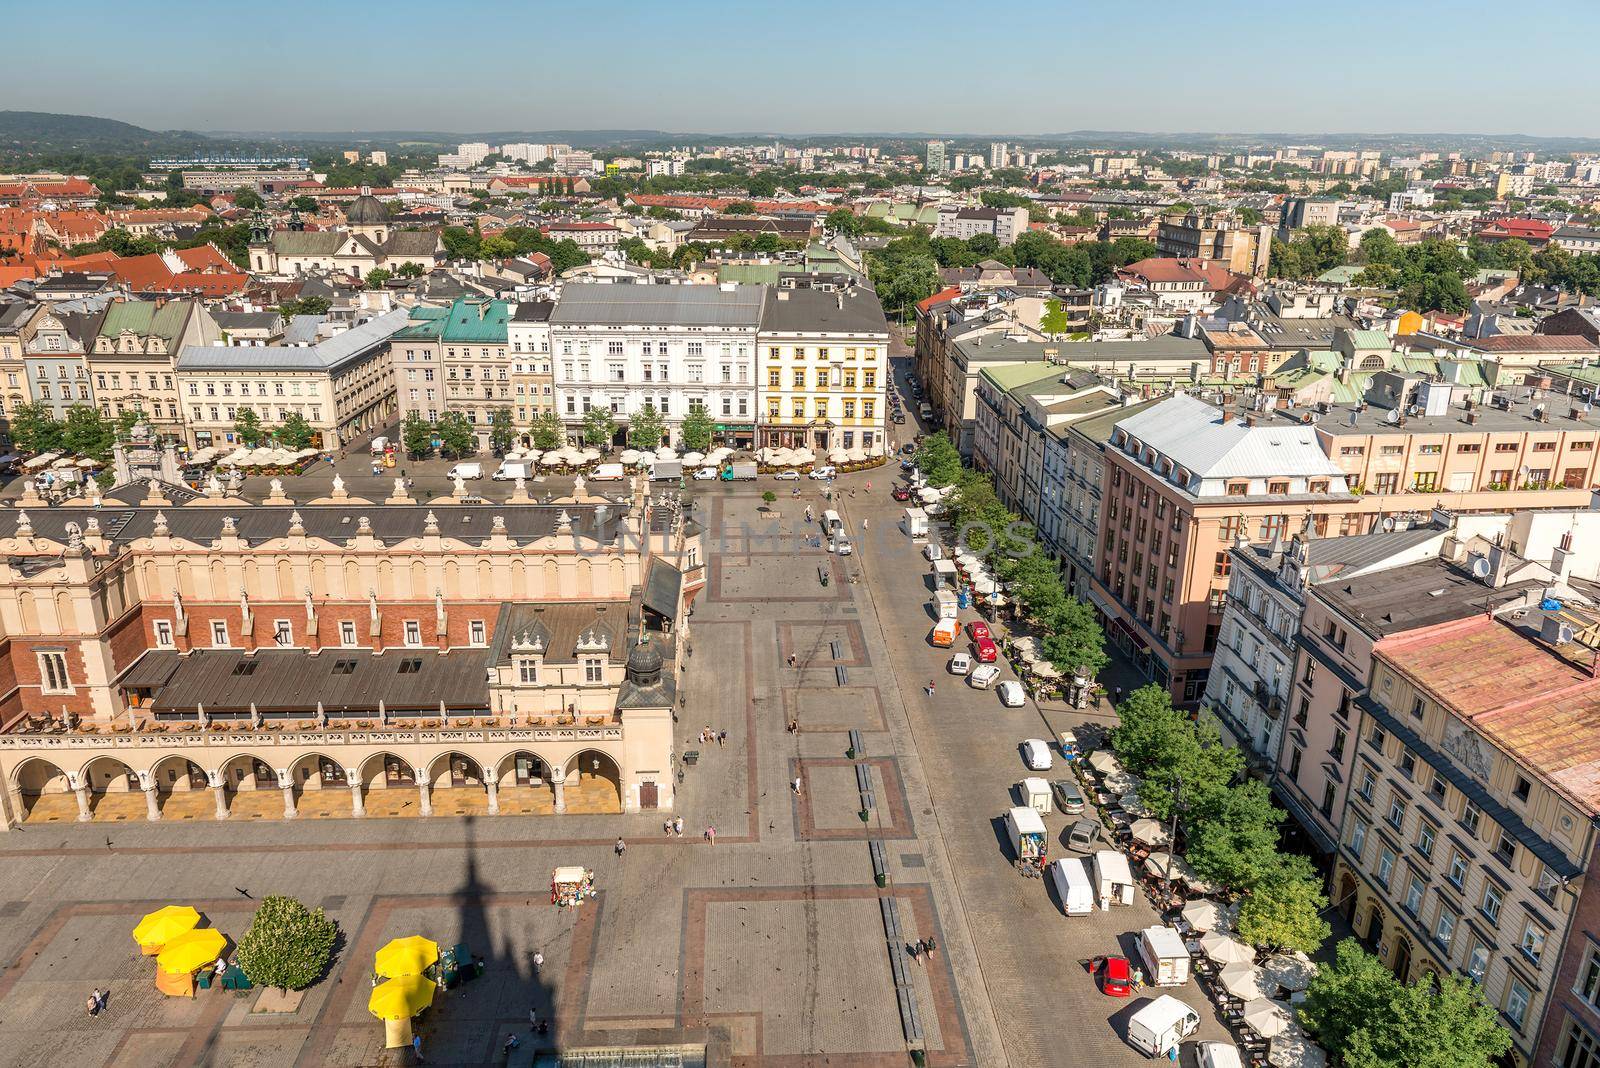 City centre of Krakow, topview by tan4ikk1